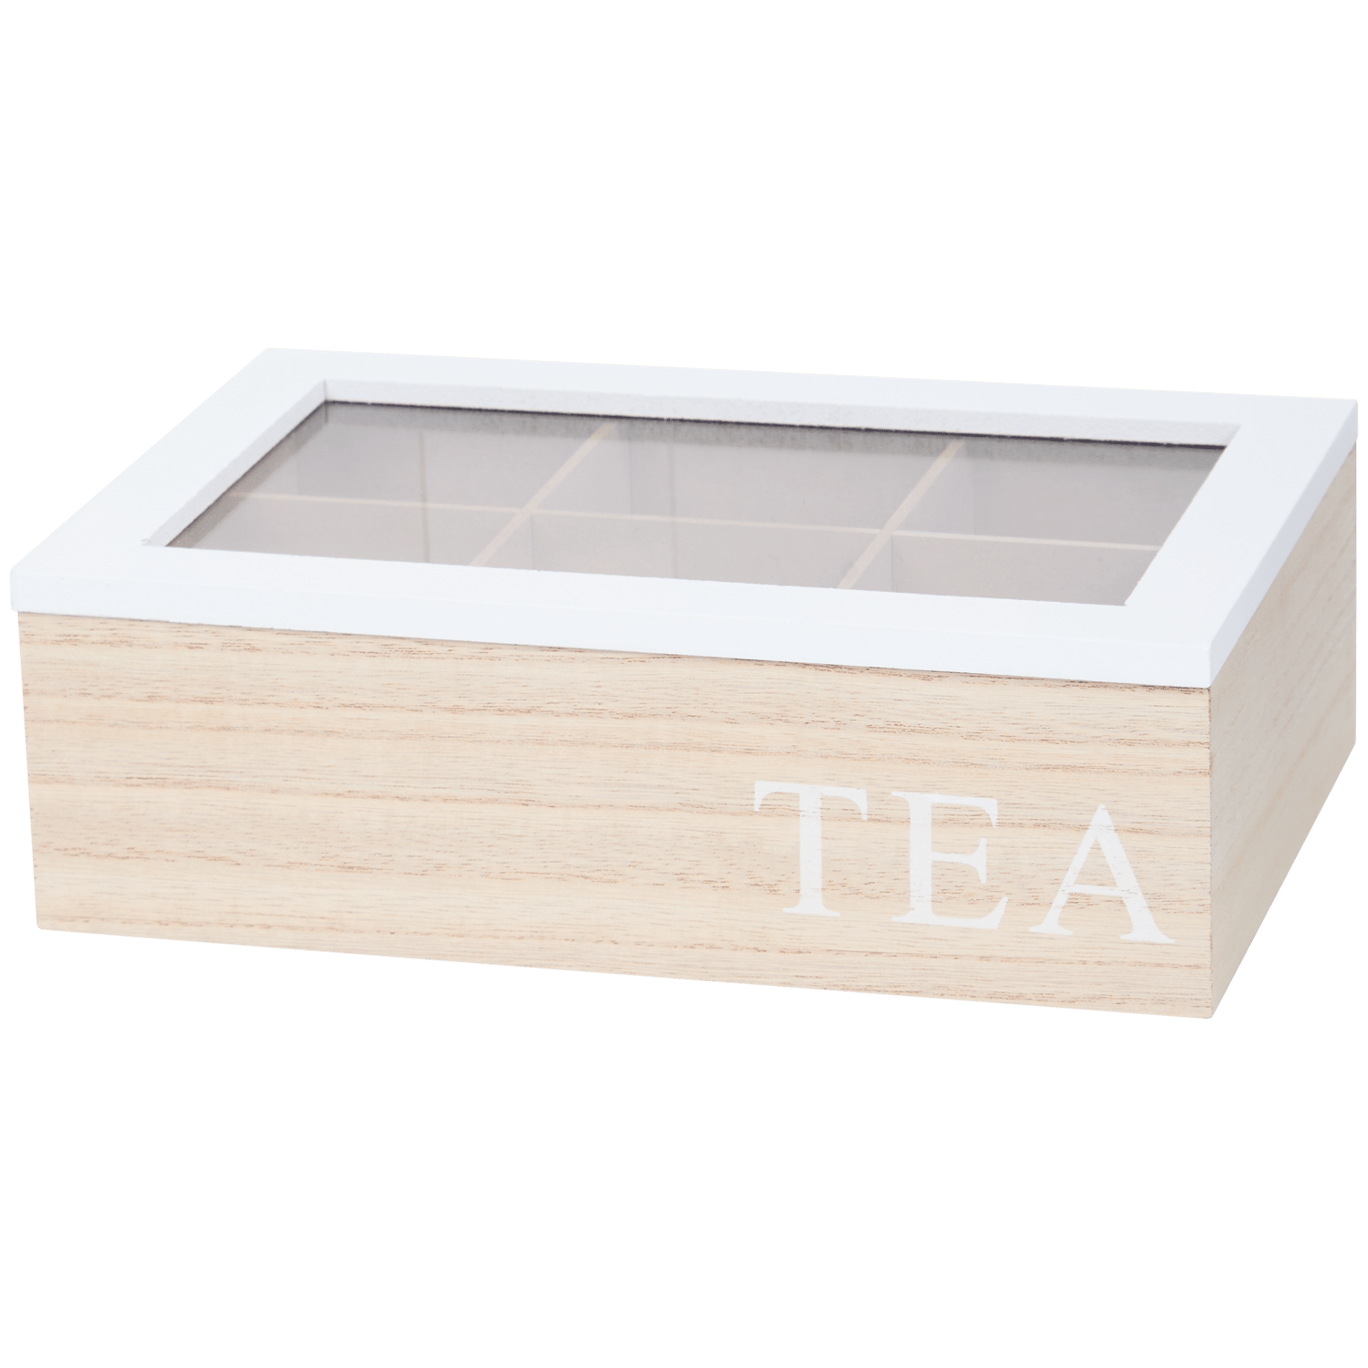 Krabička na čaj s nápisem